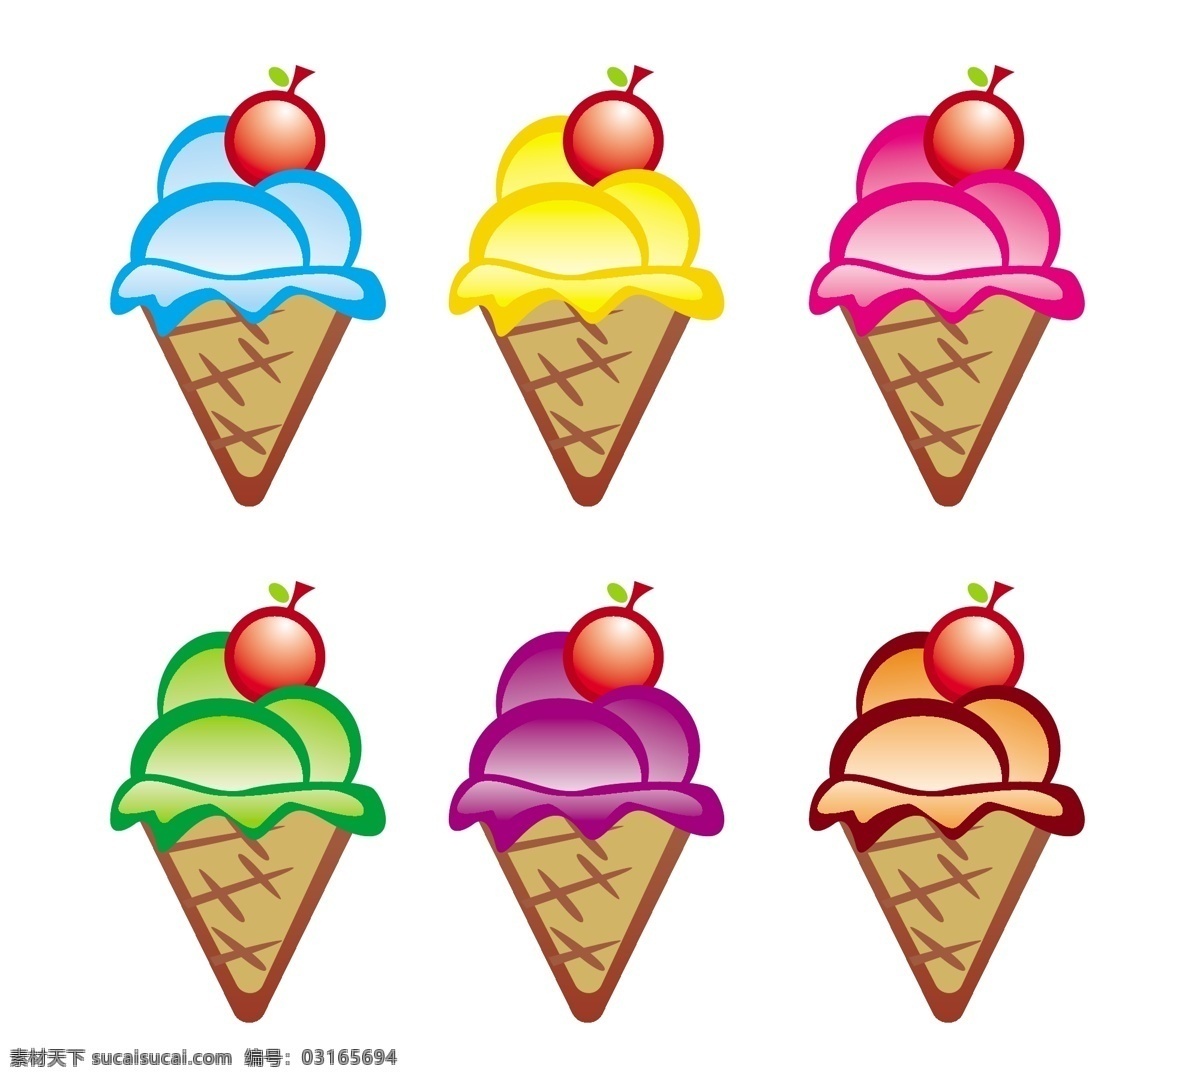 可爱 蛋糕 矢量 冰淇淋 材料 卡通 可爱的 冷 夏天 有吸引力的 美味的 向量的冰淇淋 矢量图 其他矢量图